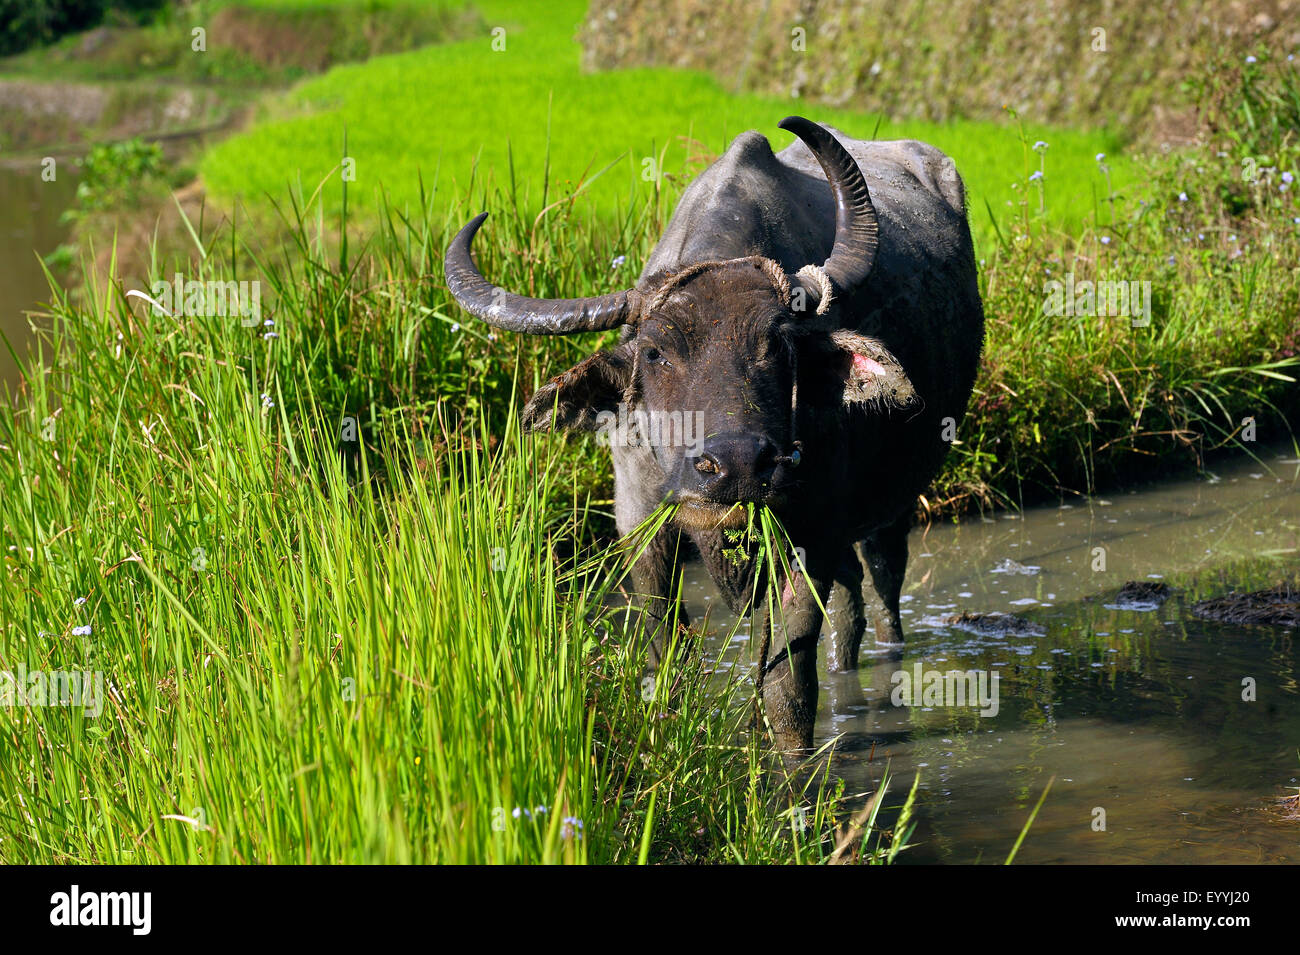 Les buffles d'Asie, anoas (Bubalus spec.), buffalo debout dans un champ de riz et de l'alimentation, les Philippines, l'île de Luçon, Batad Banque D'Images